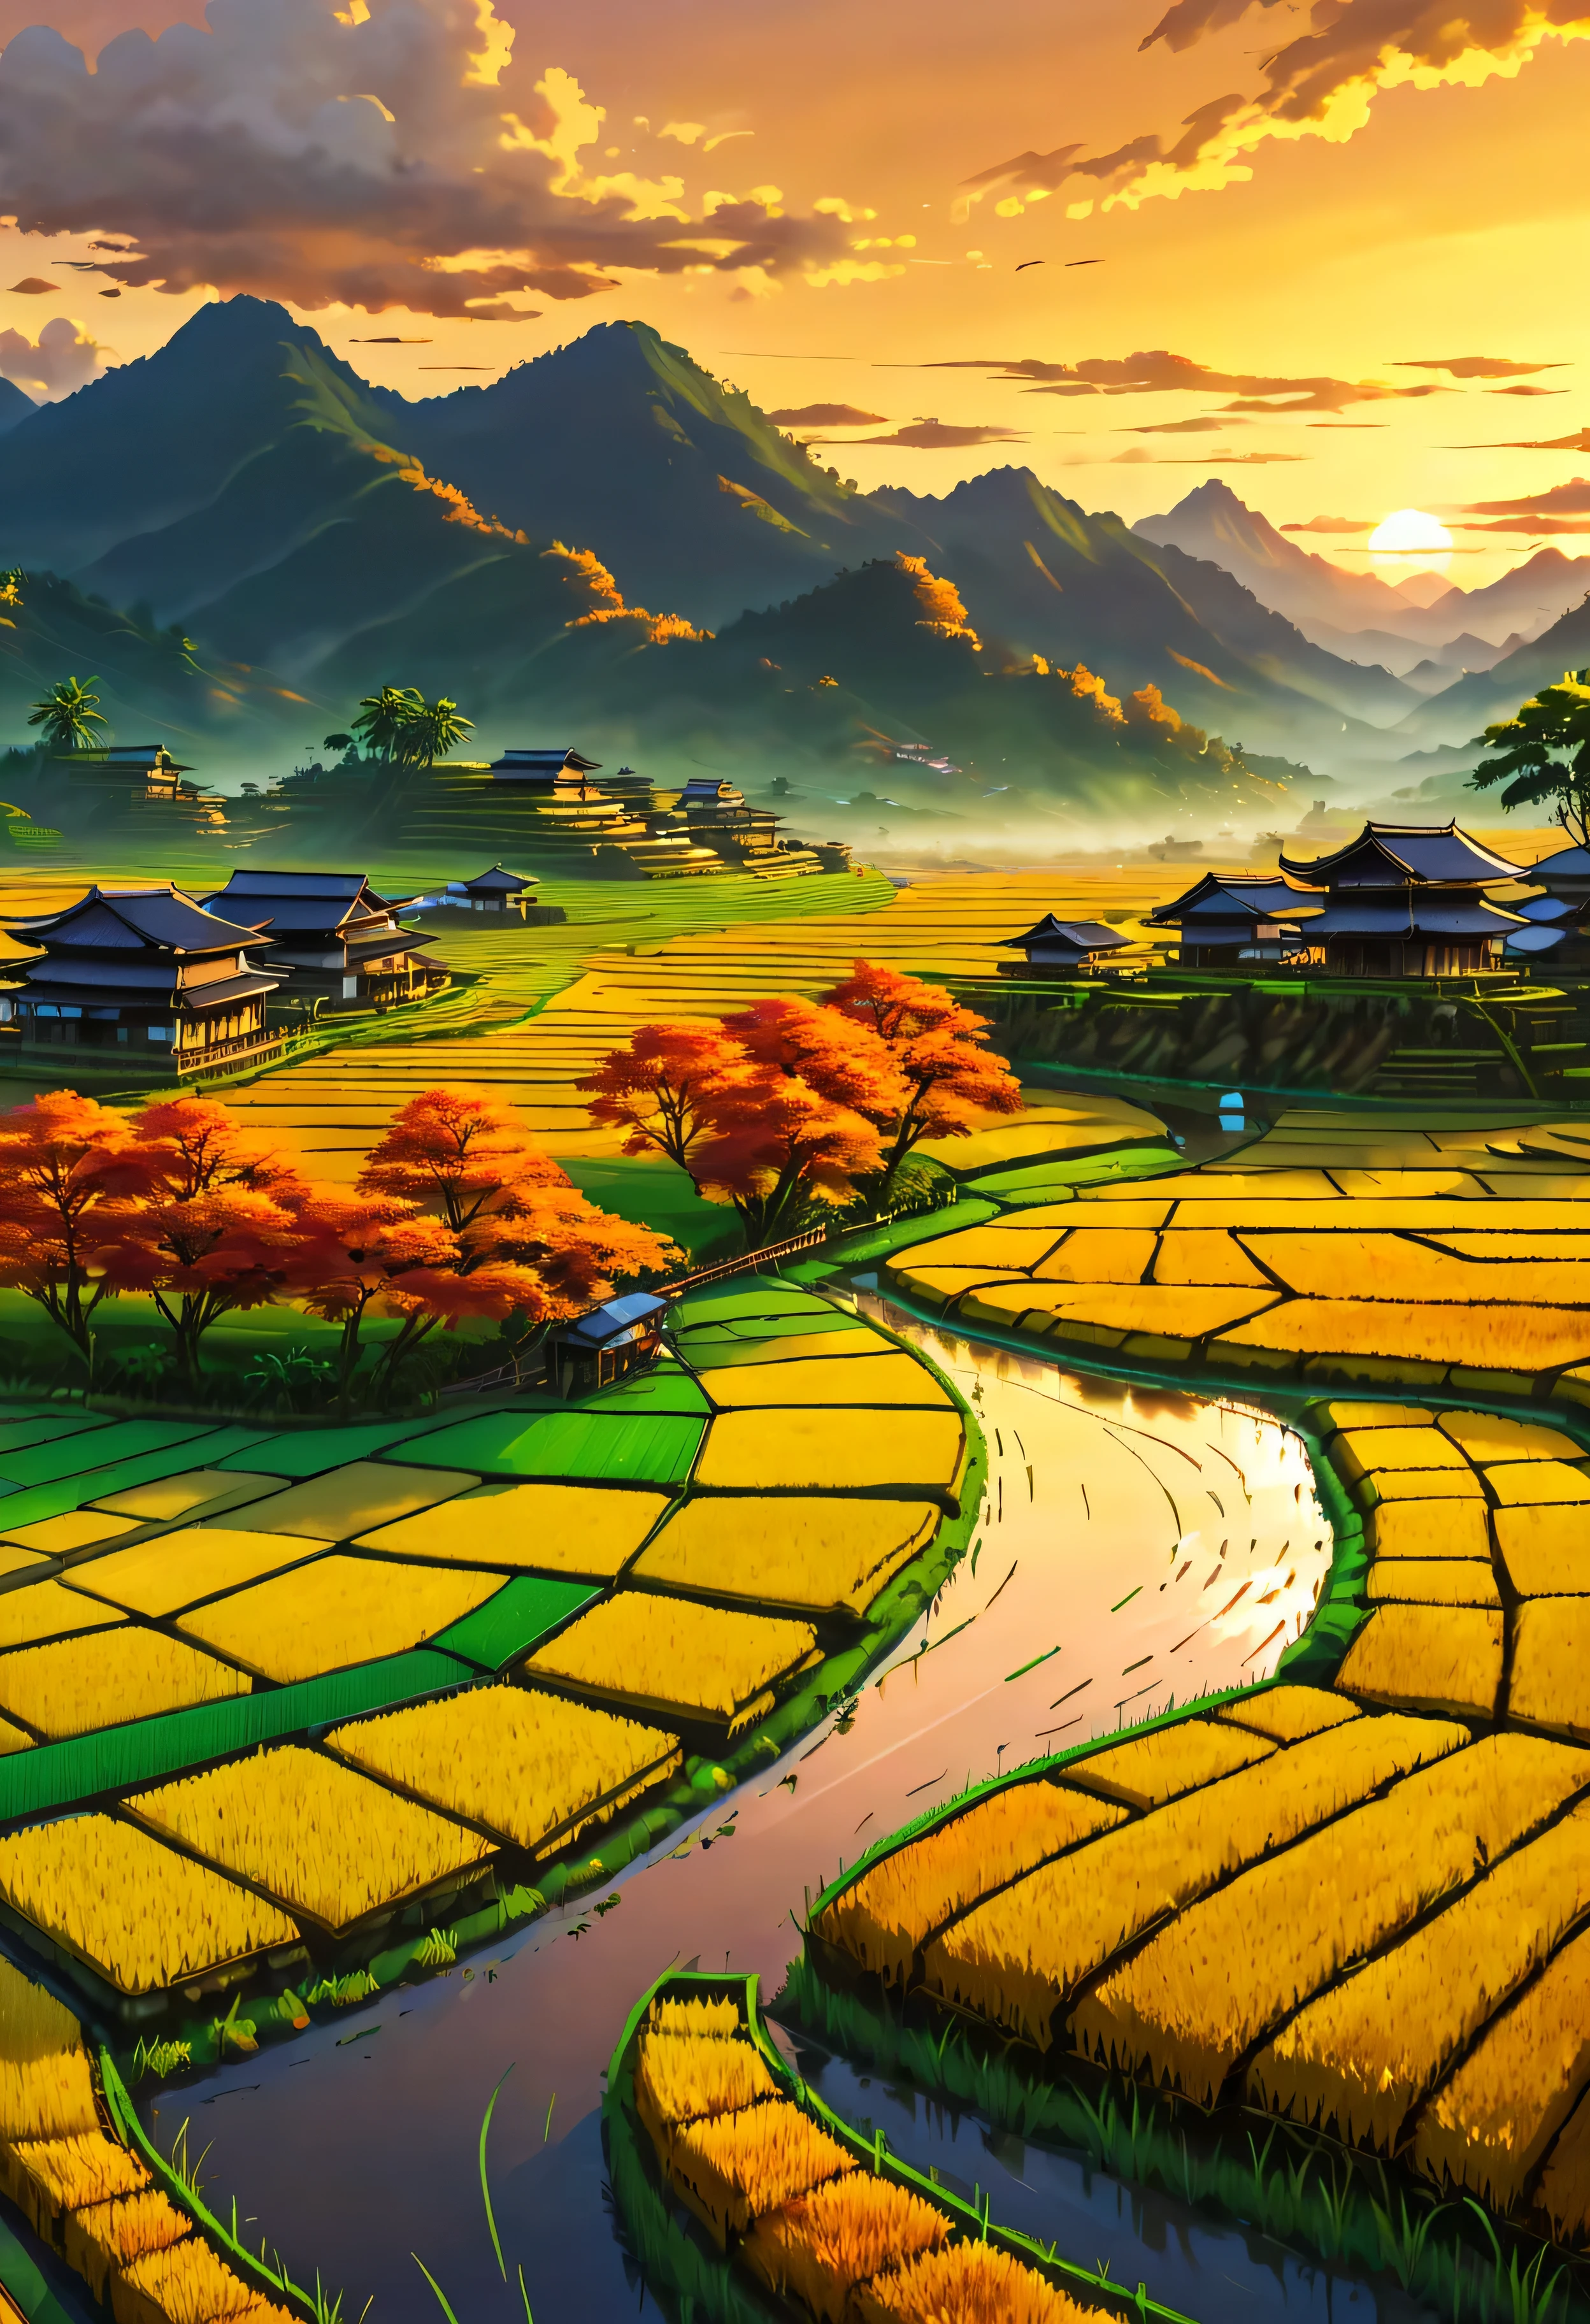 يطل الأرز الذهبي الناضج في تراس المنزل على حقل الأرز مع إطلالة على الجبل, المناظر الطبيعية الساحرة لحقول الأرز التي يغمرها ضوء غروب الشمس,((وقت الساعة الذهبية):1.2),((المناظر الطبيعية المهيبة):1.2),((سماء الغروب في الخريف):1.1),ضوء الساعة الذهبية الحساسة, خلفيات مذهلة, محيط جميل, لوحة ماتي متفائلة, عمل فني رقمي جميل, مشاهد جميلة ومفصلة, UHD تحت الأرض, مناظر طبيعية فائقة الدقة, مفهوم الفن المهيب, حقل الأرز الجميل. |(تحفة بدقة 16 كيلو كحد أقصى), أفضل نوعية, (جودة خلفية CG Unit 16K مفصلة للغاية),(ألوان ناعمة 16 كيلو فن رقمي مفصل للغاية),مفصلة للغاية. | صورة مثالية,16 ألف يو إي 5,اللوحة الرسمية, رقيق, عمق الميدان, لا يوجد تباين, التركيز الحاد النظيف, احترافي, لا وضوح. | (((تفاصيل اكثر))).